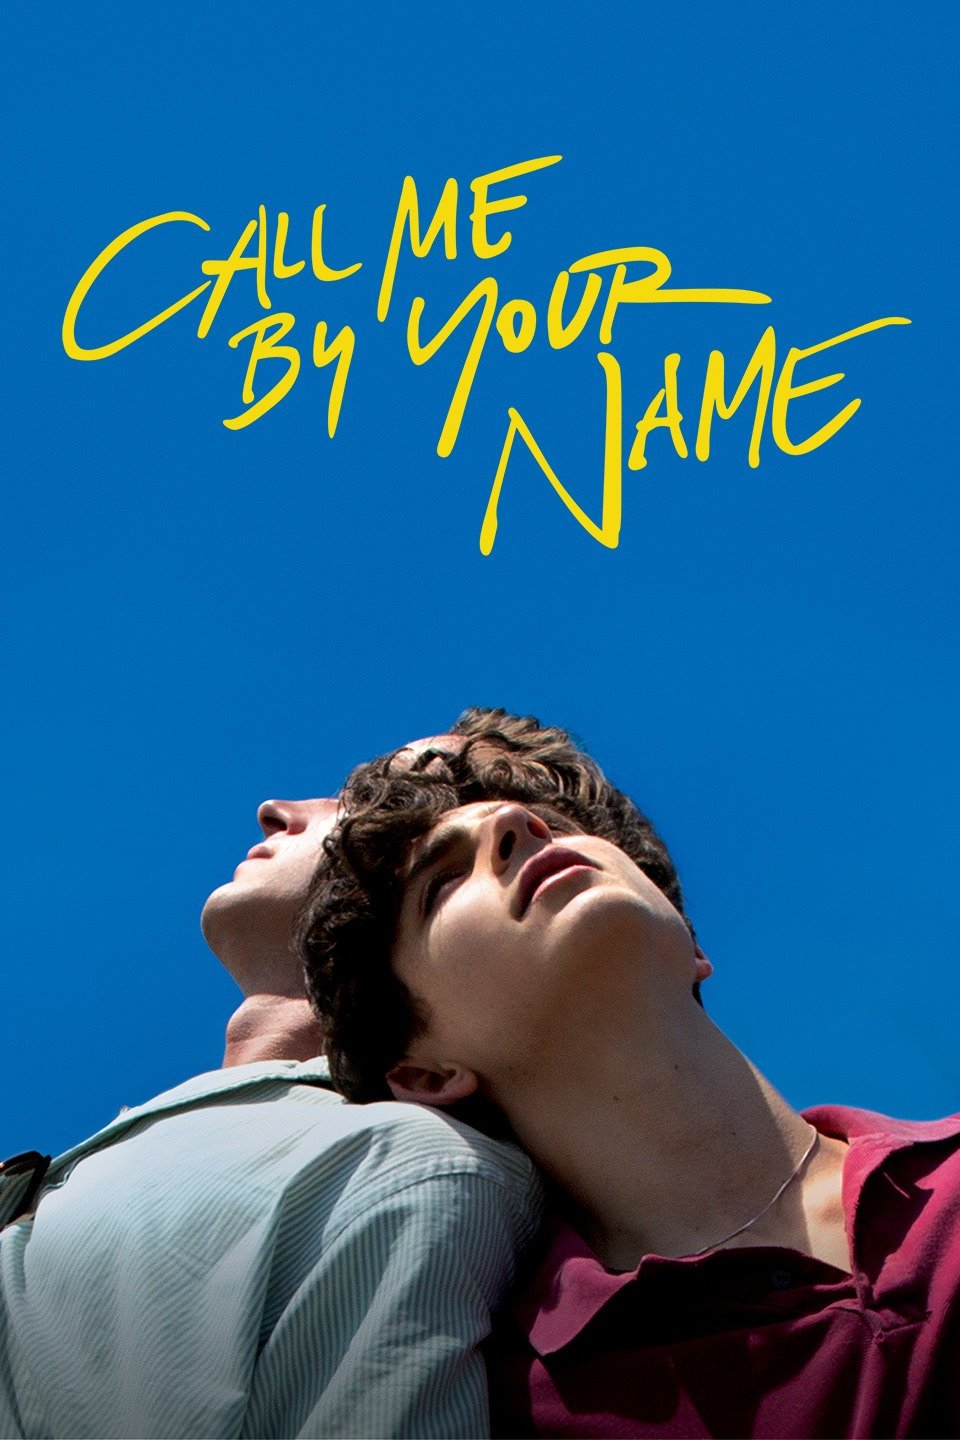 [ฝรั่ง] Call Me by Your Name (2017) คอล มี บาย ยัวร์ เนม [1080p] [พากย์อังกฤษ 5.1] [Soundtrack บรรยายไทย] [เสียงอังกฤษ + ซับไทย] [ONE2UP]